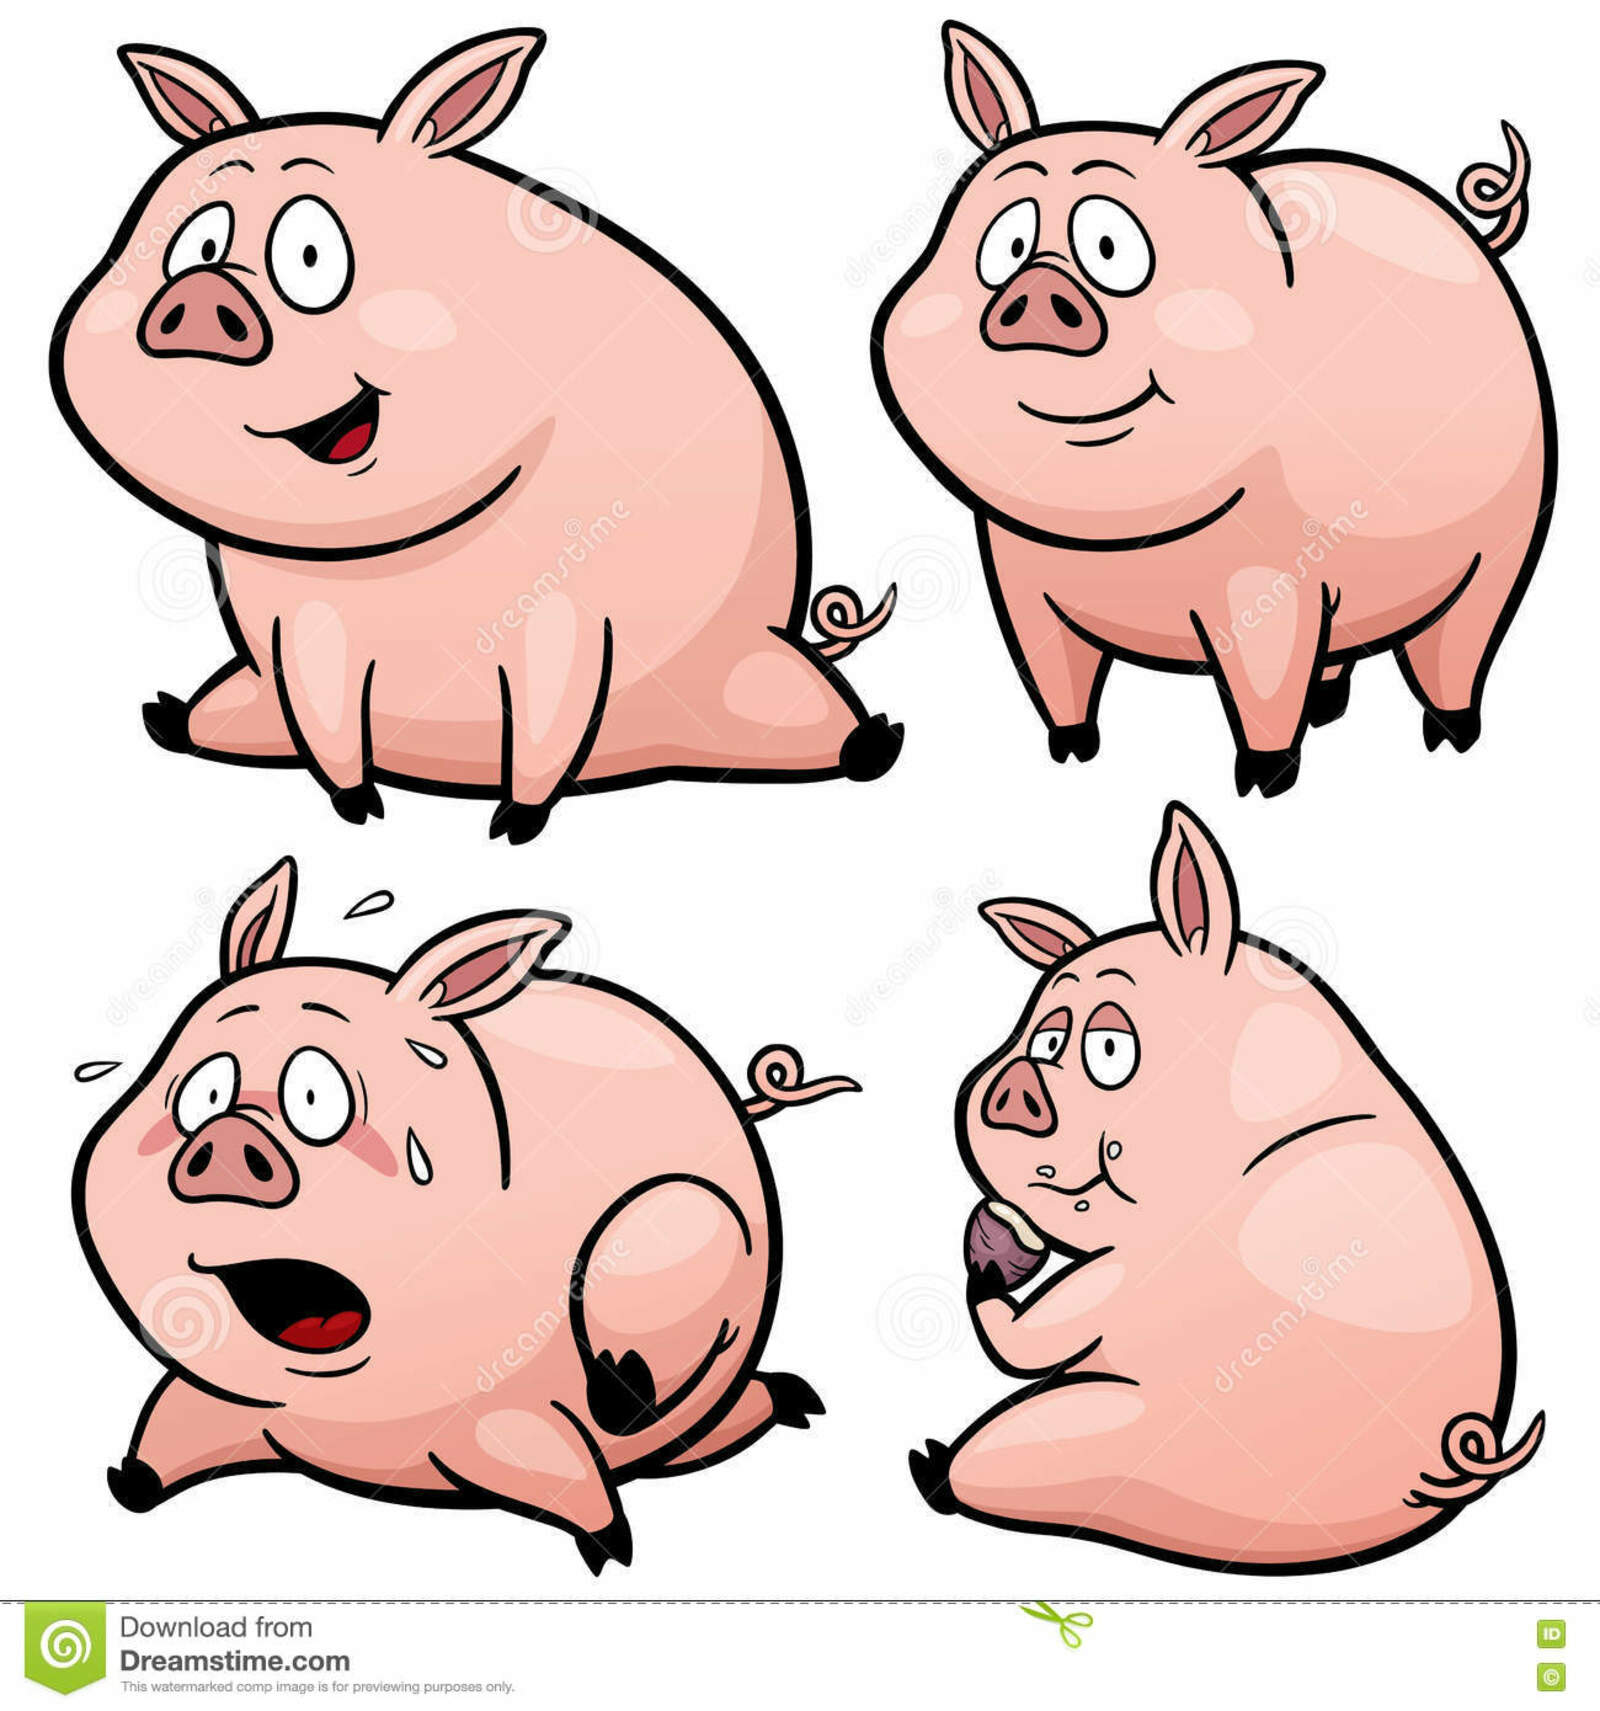 Европейские учёные расшифровали эмоции свиней по хрюканью